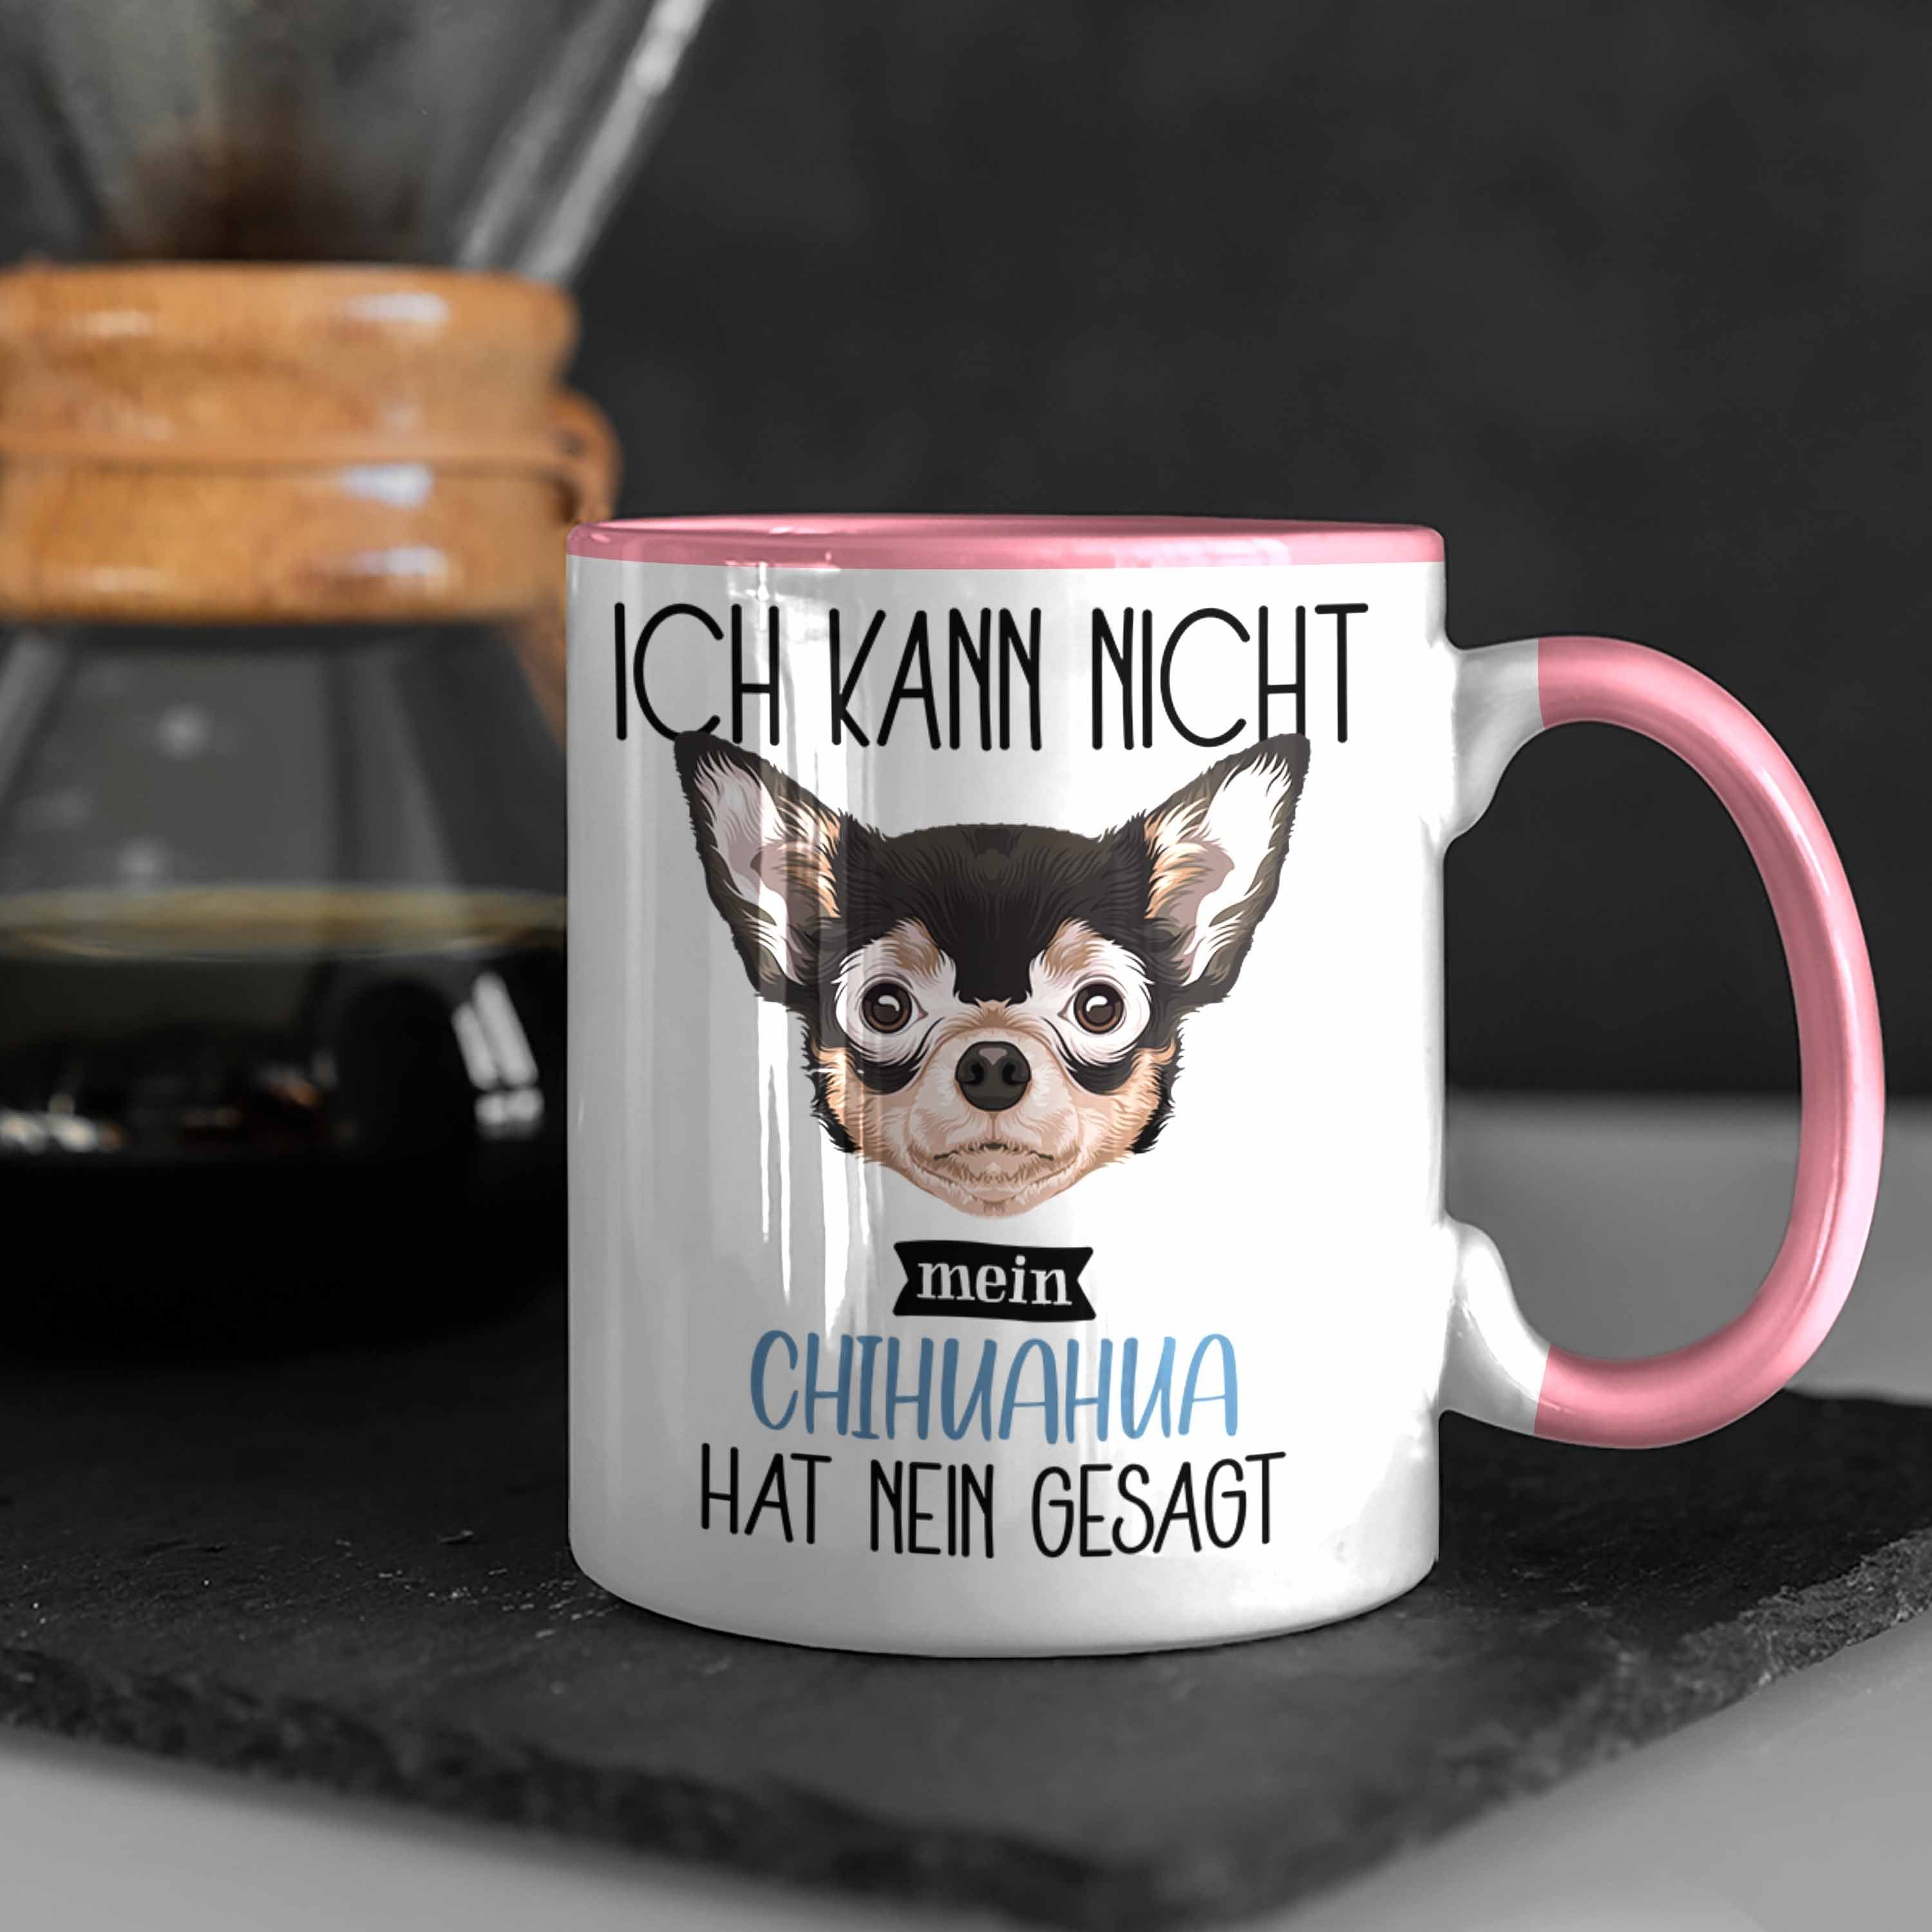 Trendation Tasse Lustiger Geschenkidee Besitzer Tasse Spruch Kan Rosa Geschenk Ich Chihuahua